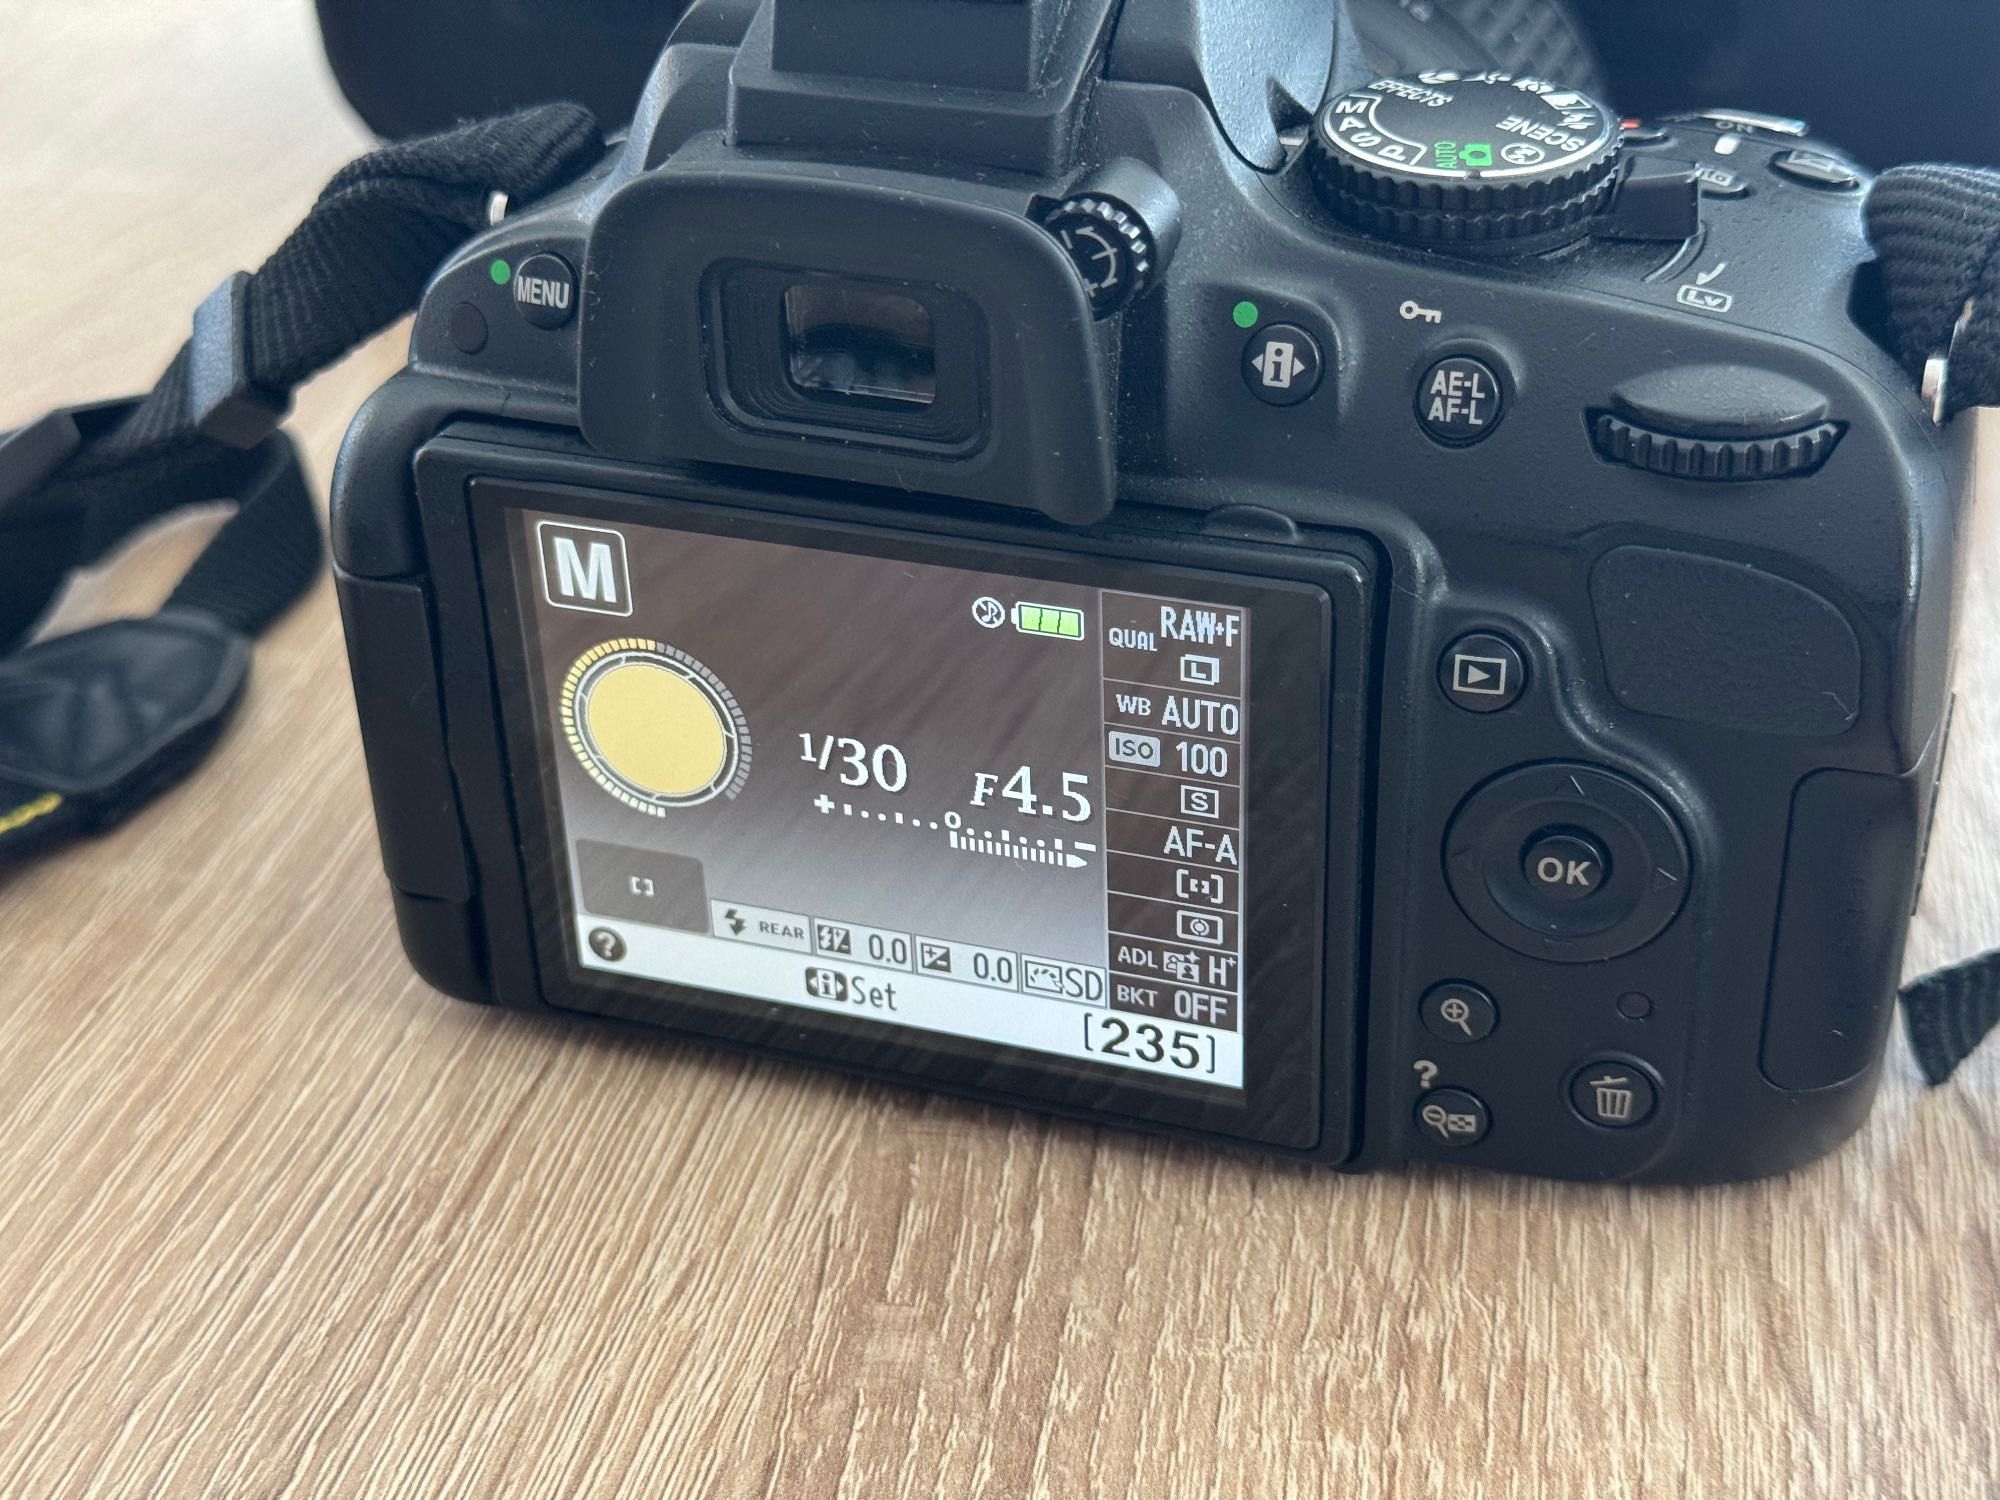 DSLR Nikon D5100 + Обектив 18-55mm VR